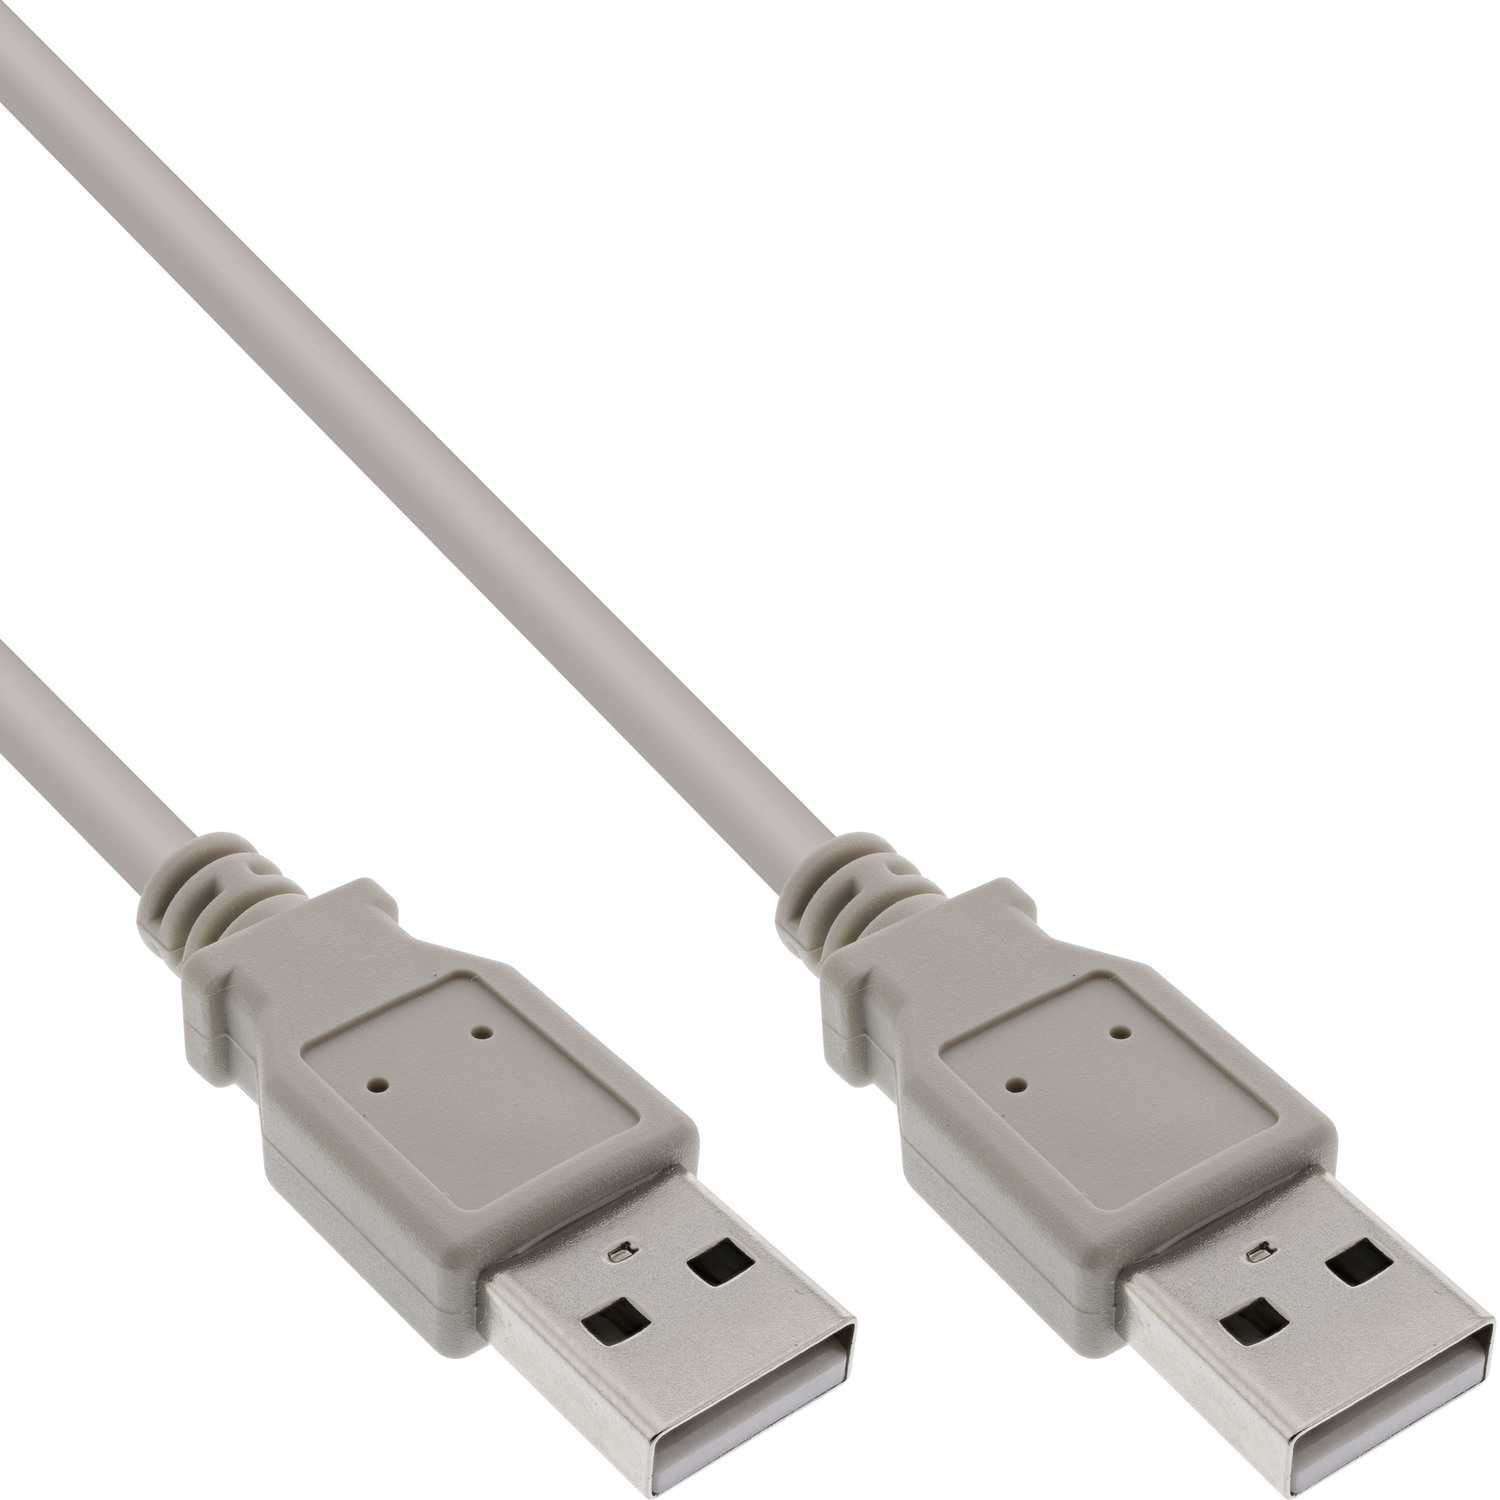 USB 0,5m USB A 2.0 beige, 2.0 Kabel, InLine® USB A, Kabel INLINE USB an